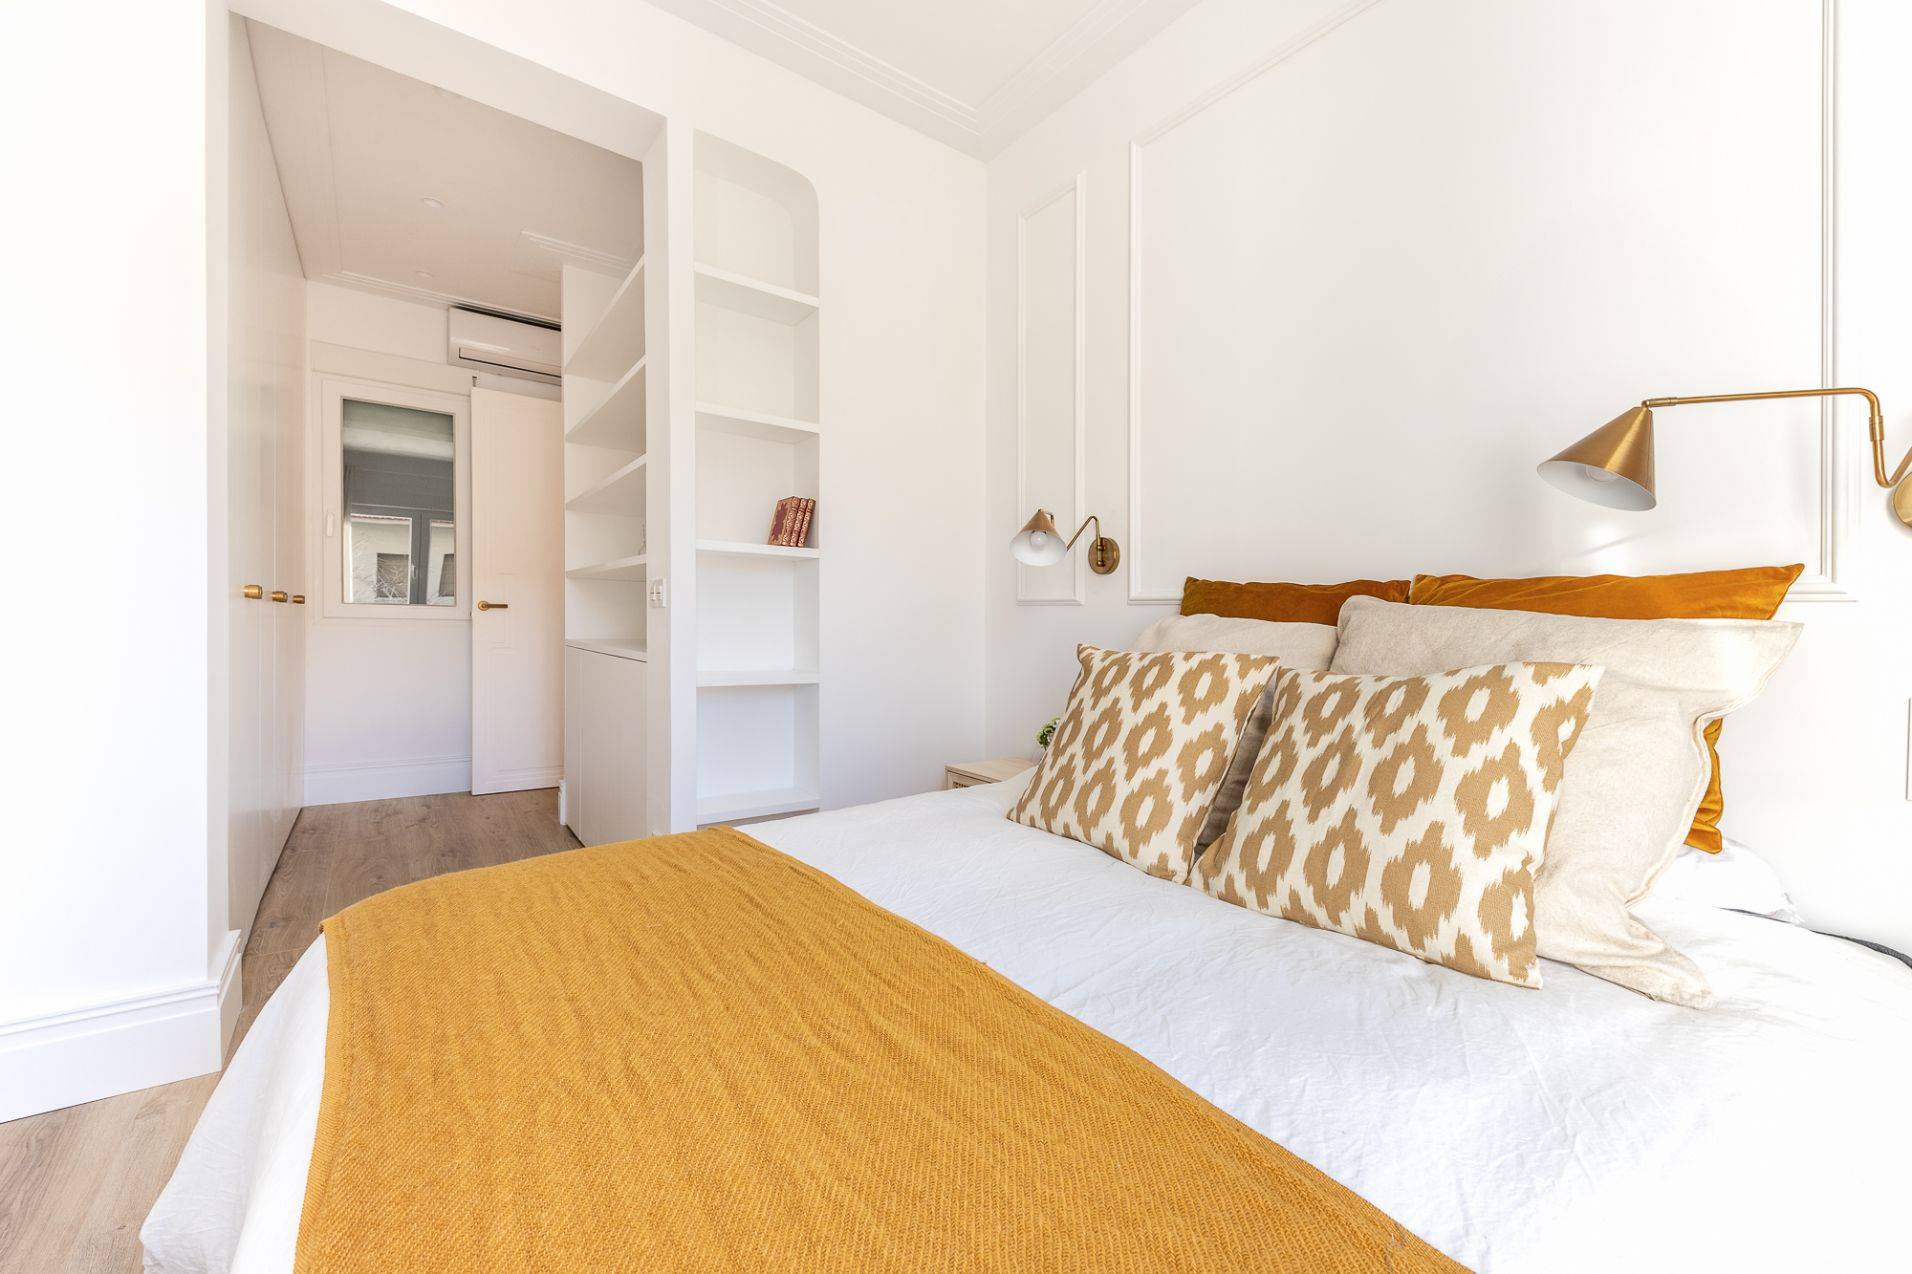 Dormitorio con paredes blancas con molduras, estantería y con ropa de cama mostaza.